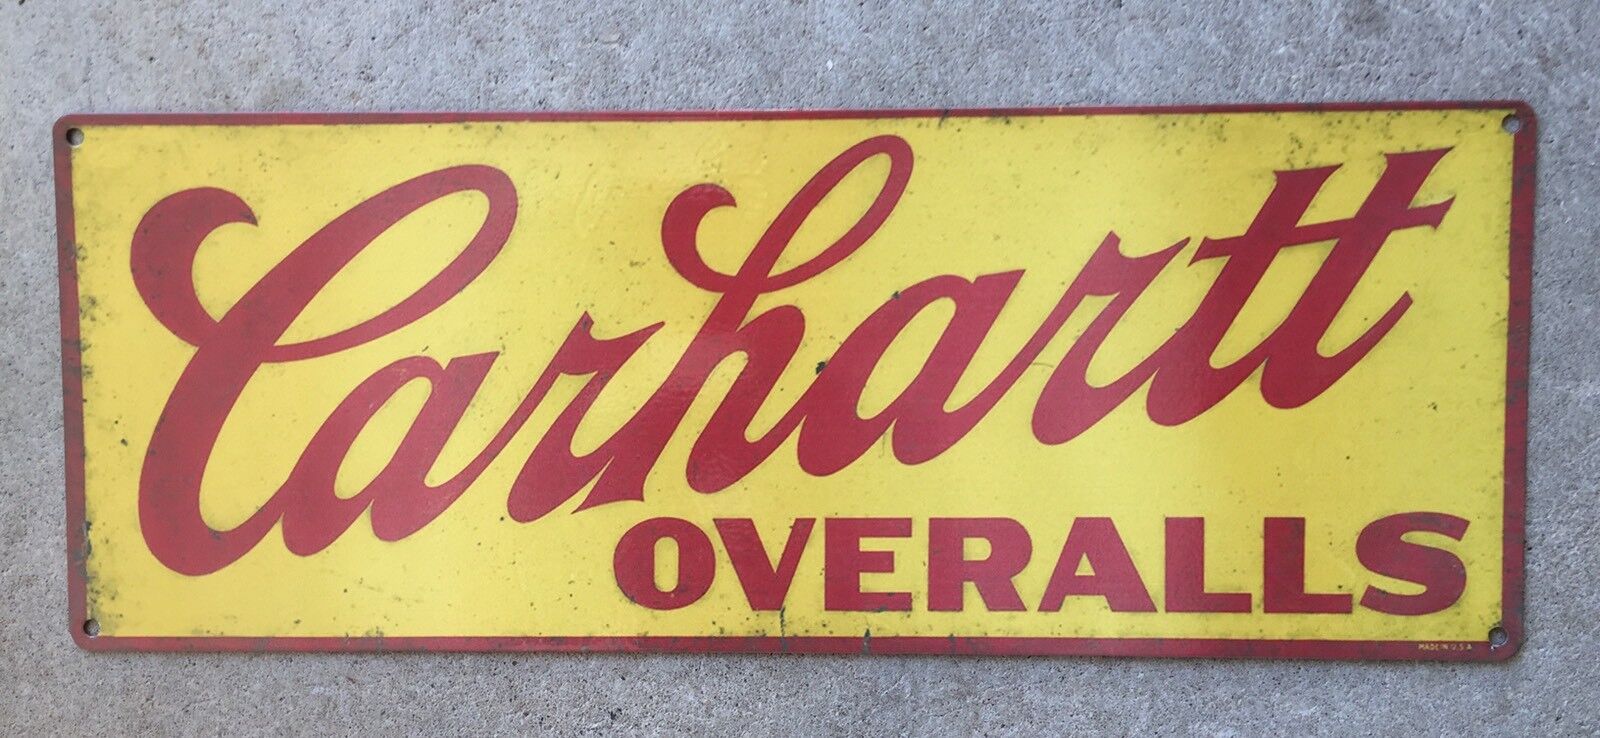 Carhartt Overalls Denim Blue Jeans Workwear Vintage Frame Advertising Steel Sign